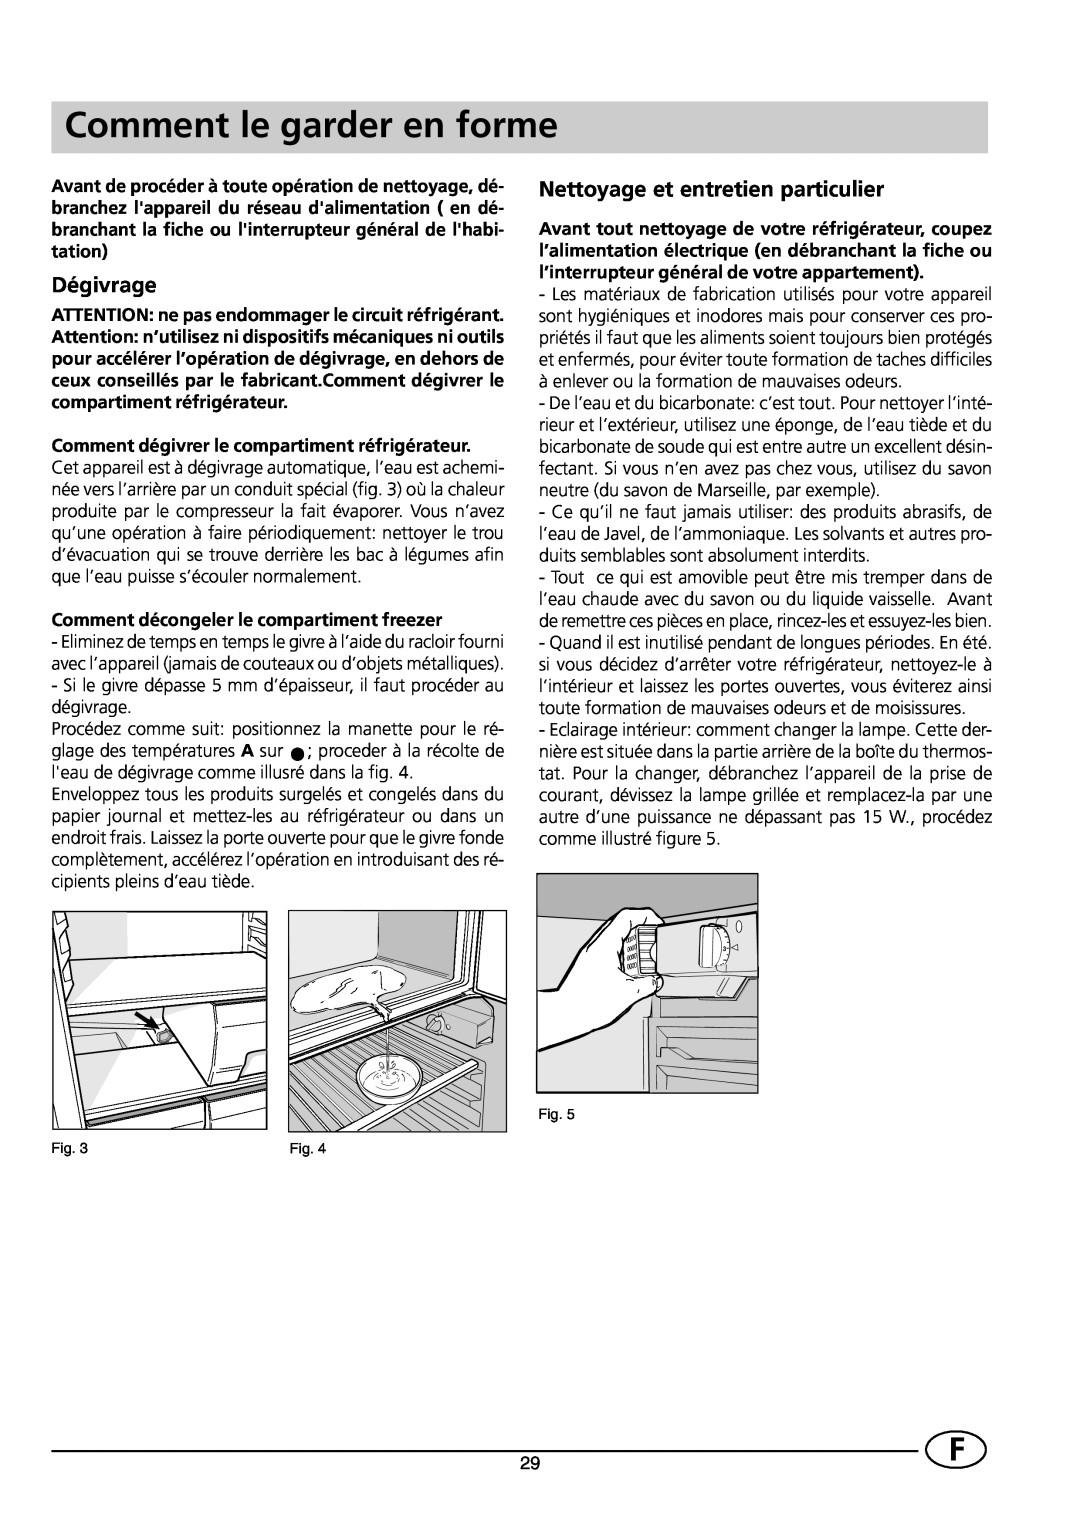 Smeg FR300SE1 manual Comment le garder en forme, Dégivrage, Nettoyage et entretien particulier 